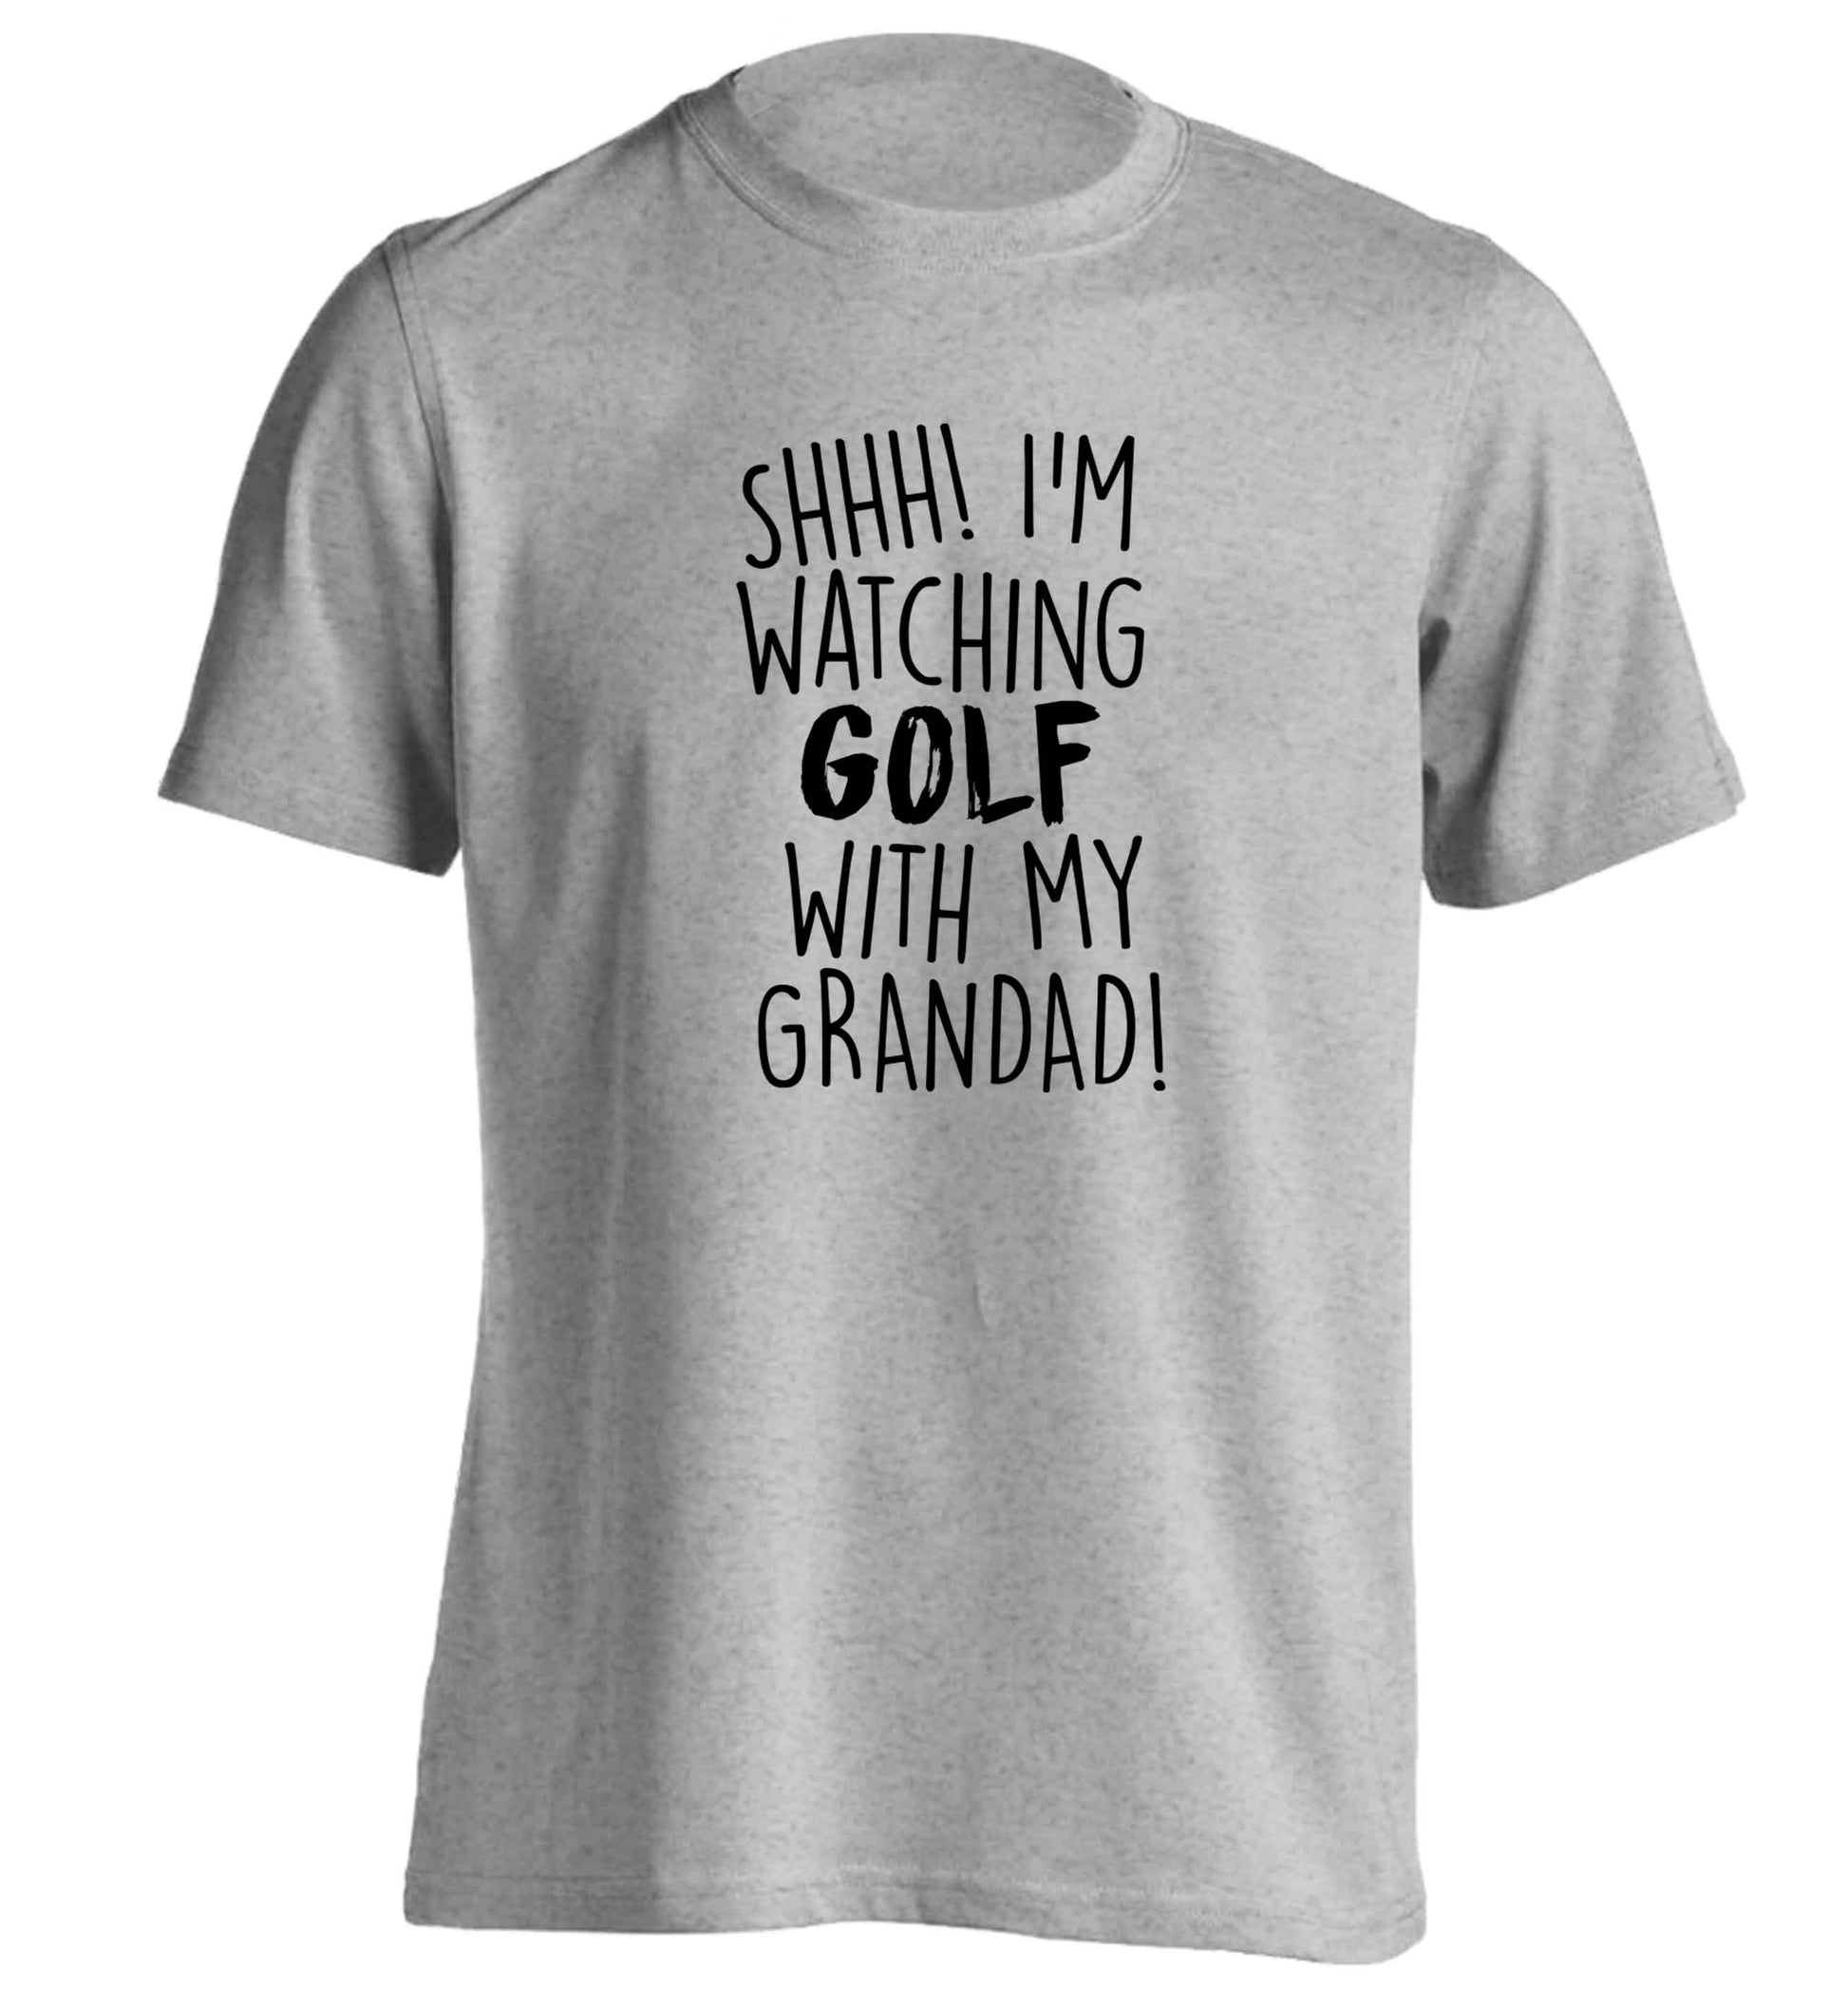 Shh I'm watching golf with my grandad adults unisex grey Tshirt 2XL